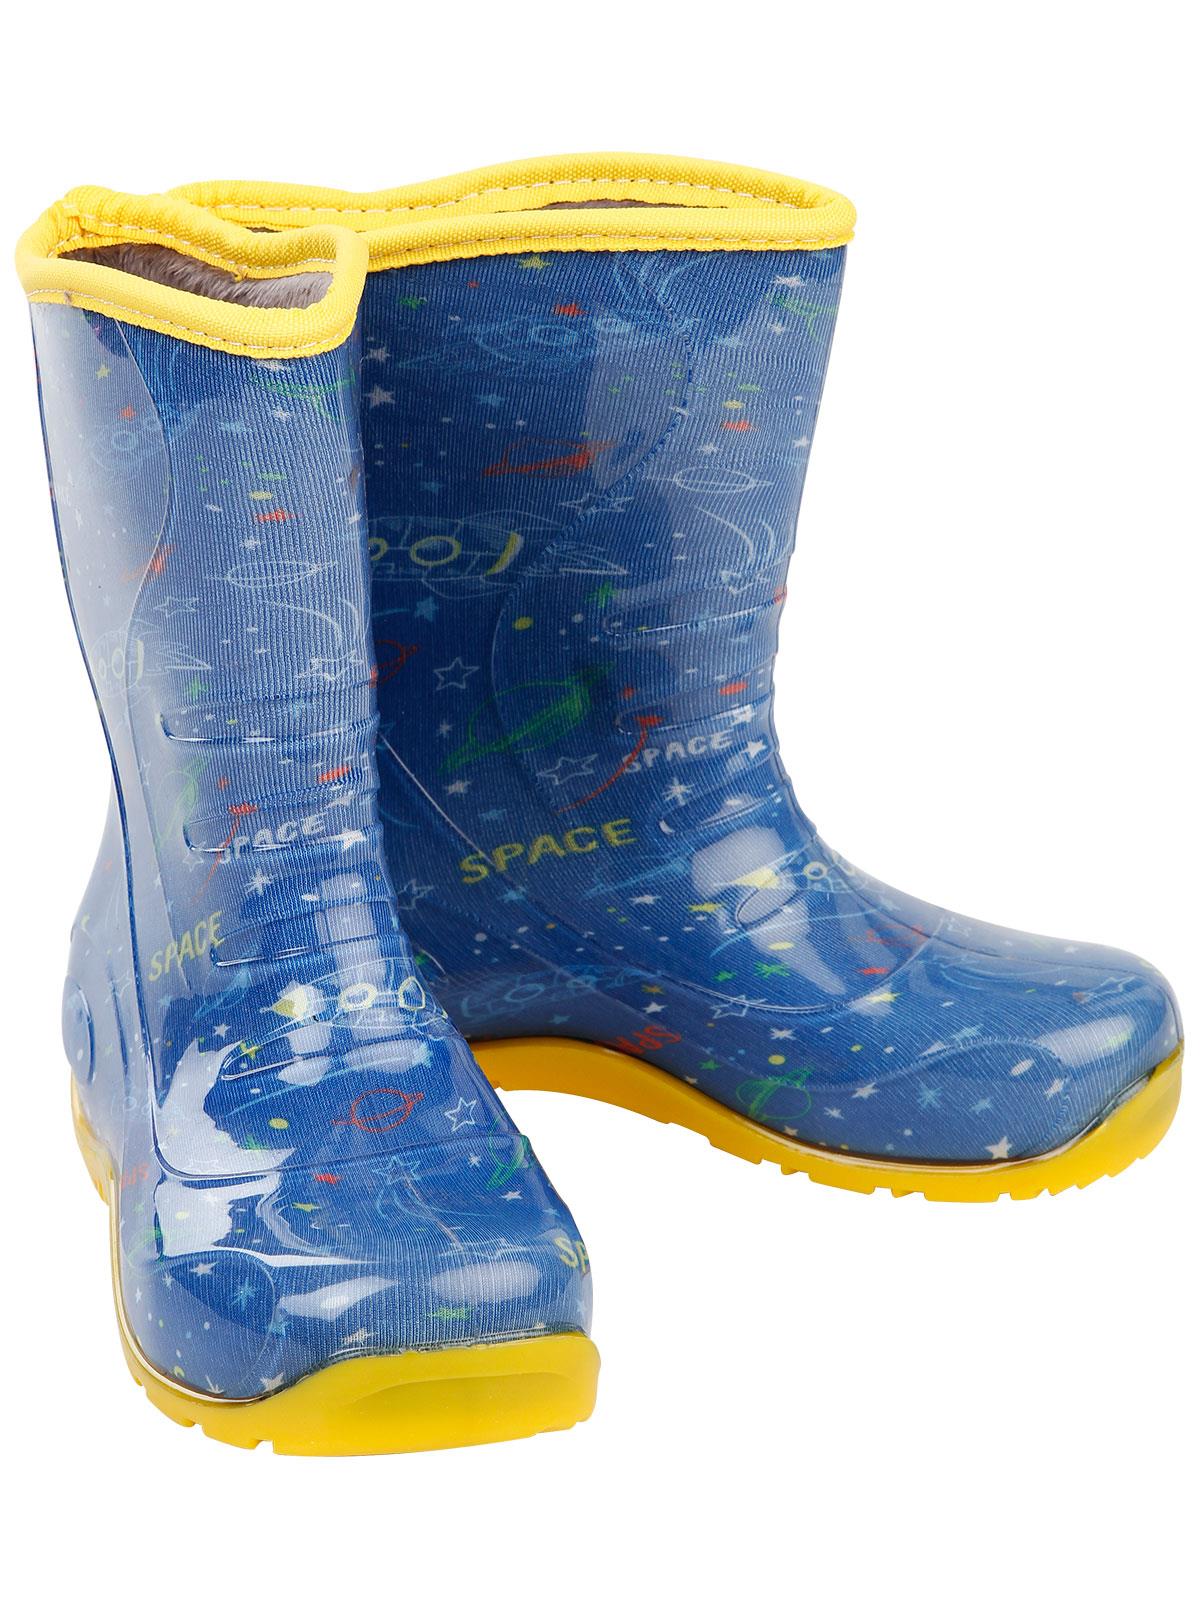 Boots Erkek Uzay Dinazor Desenli Yağmur Çizmesi 30-34 Numara Mavi